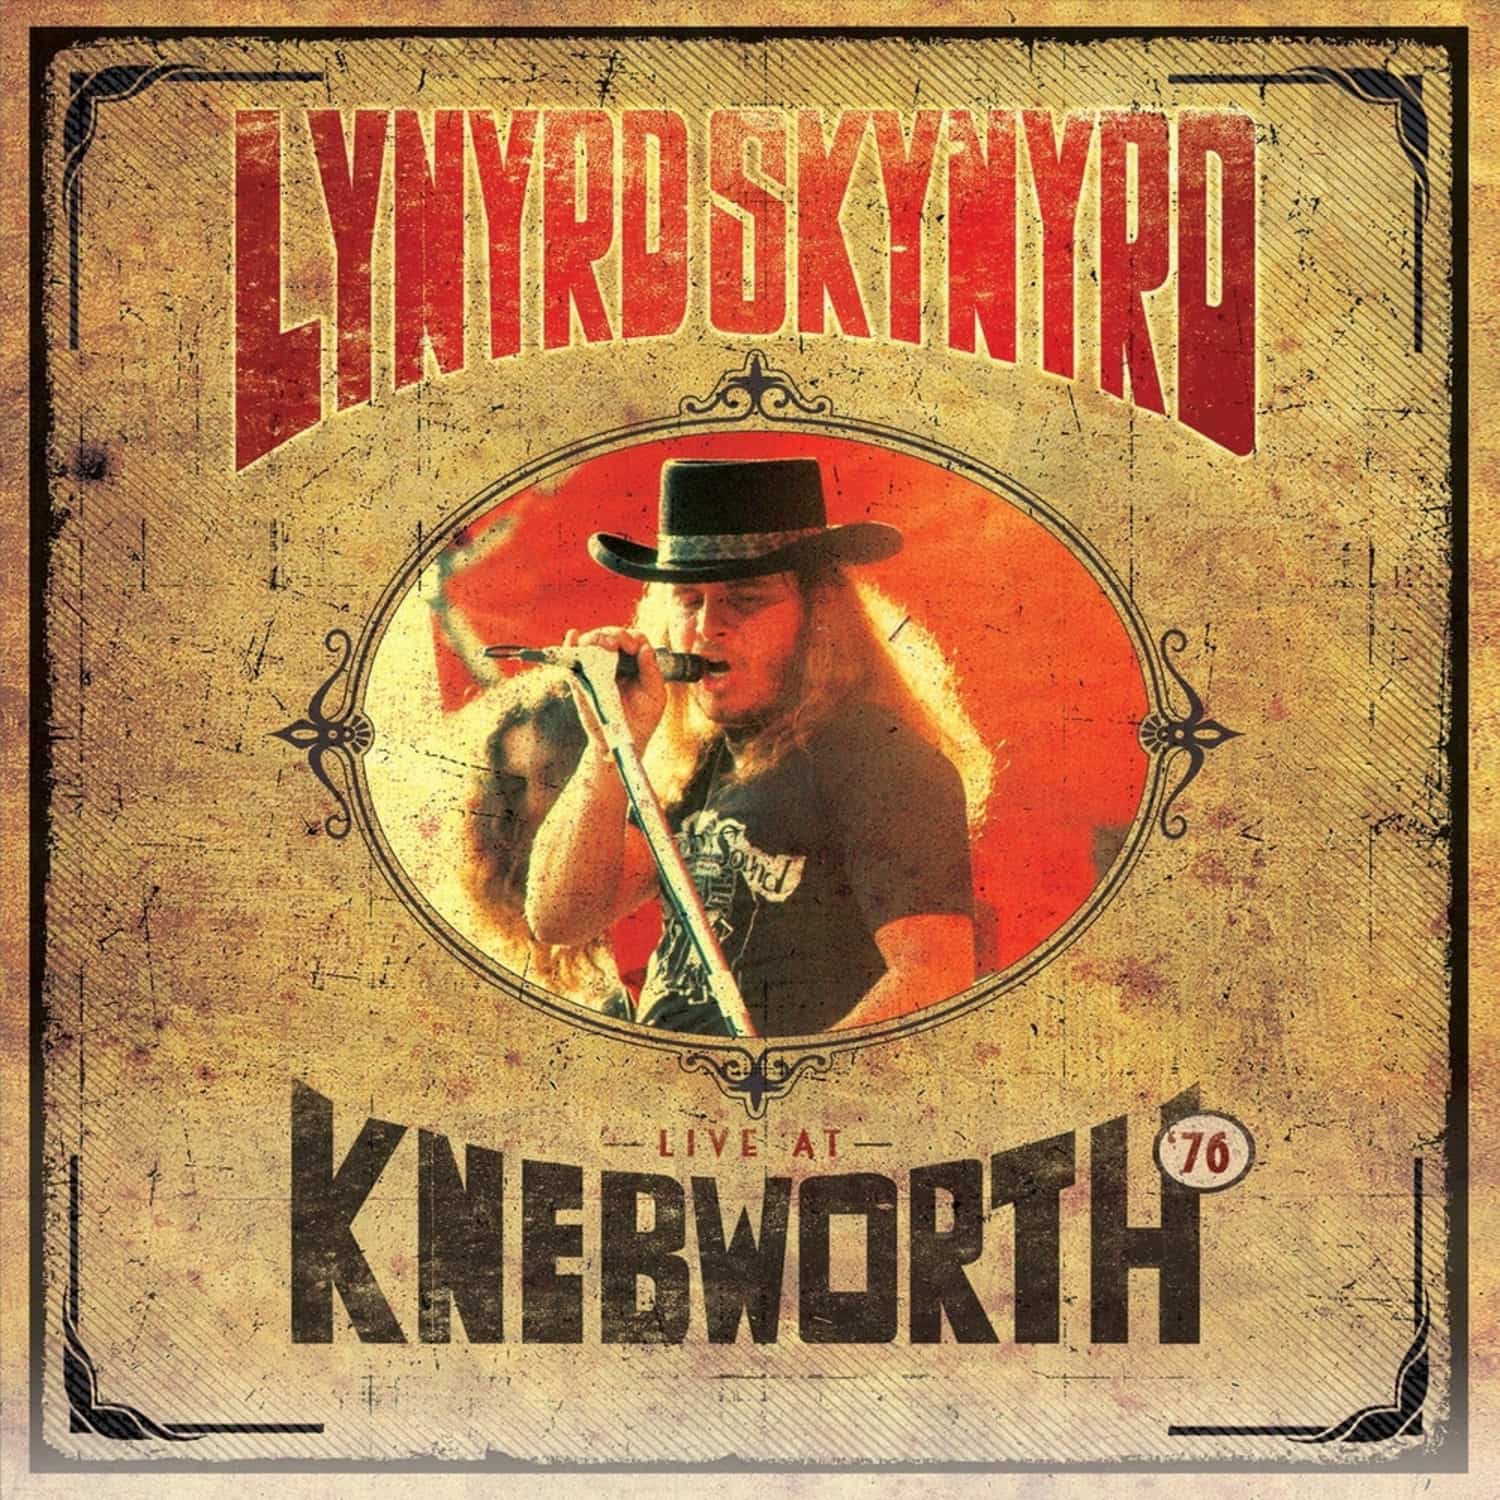 Lynyrd Skynyrd - LIVE AT KNEBWORTH 76 